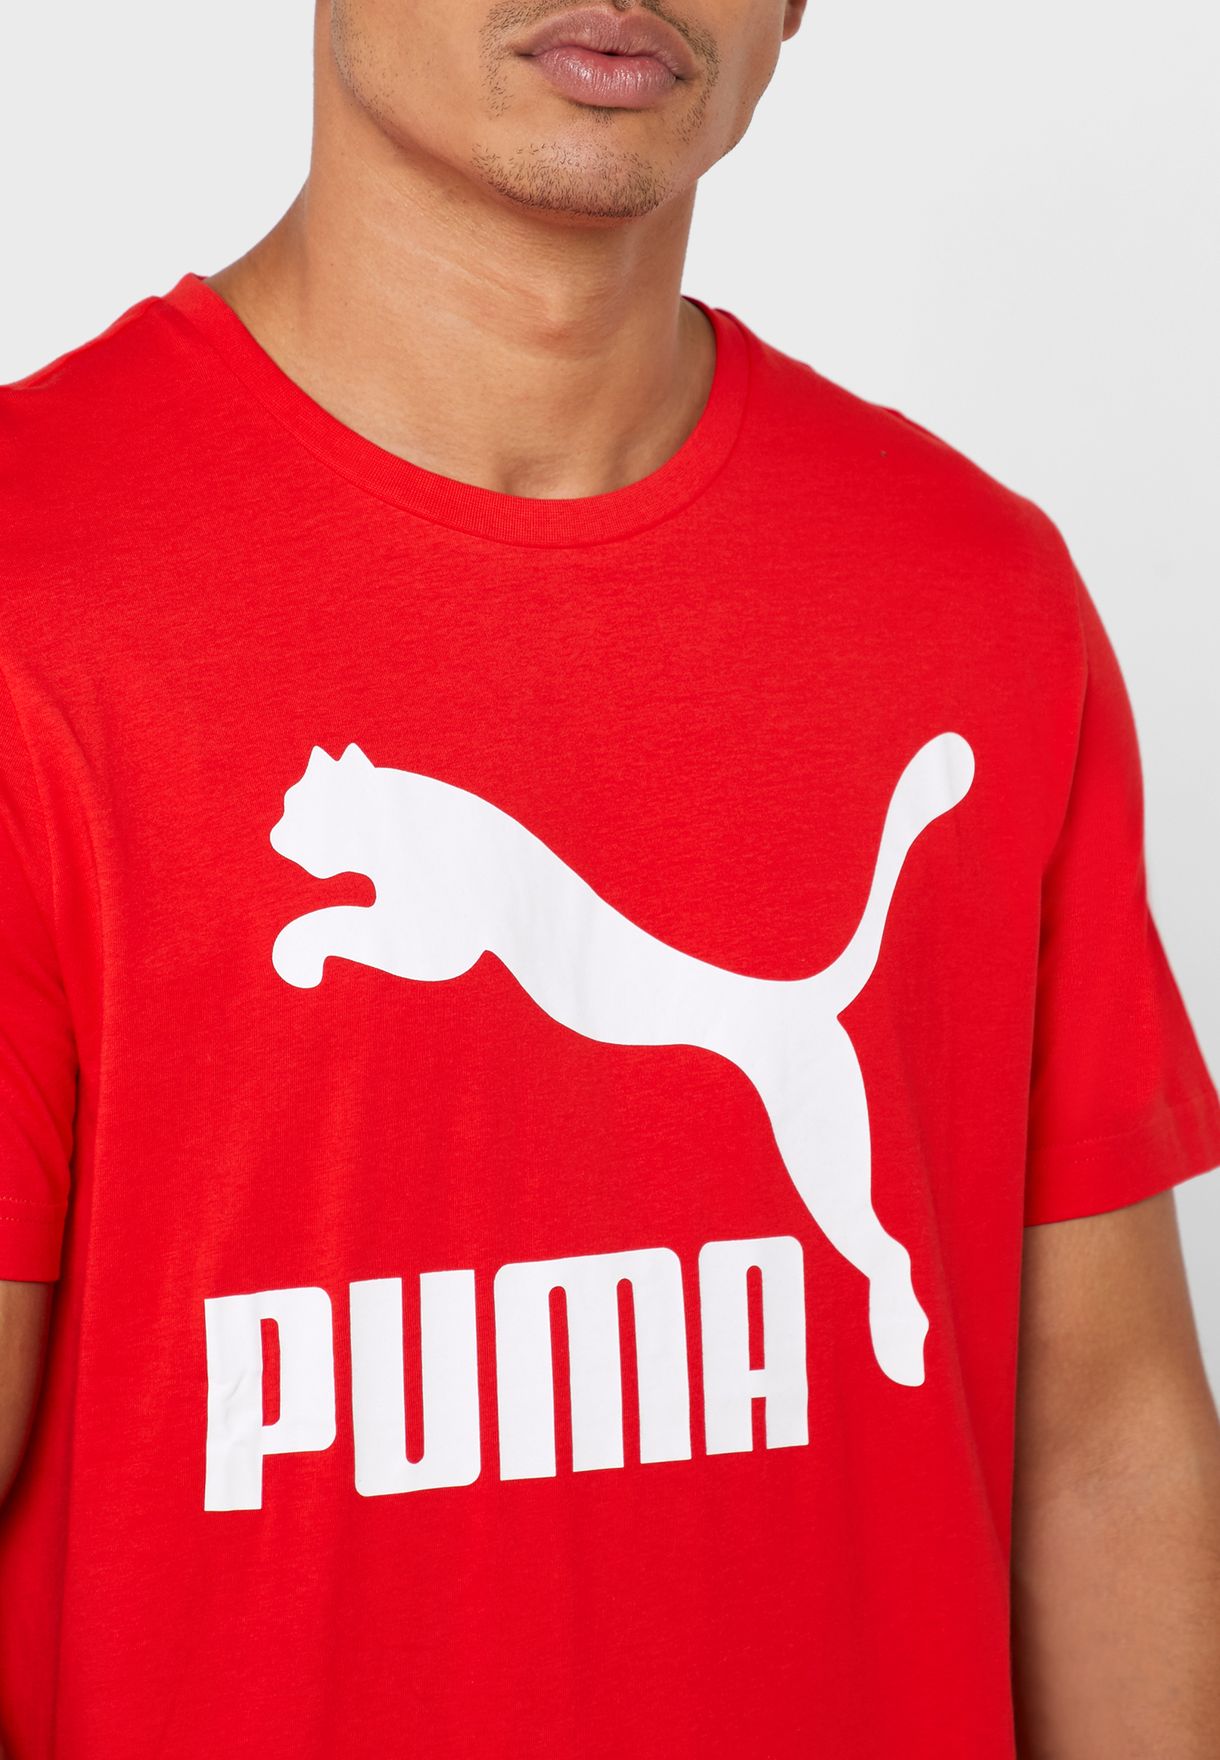 puma red shirt